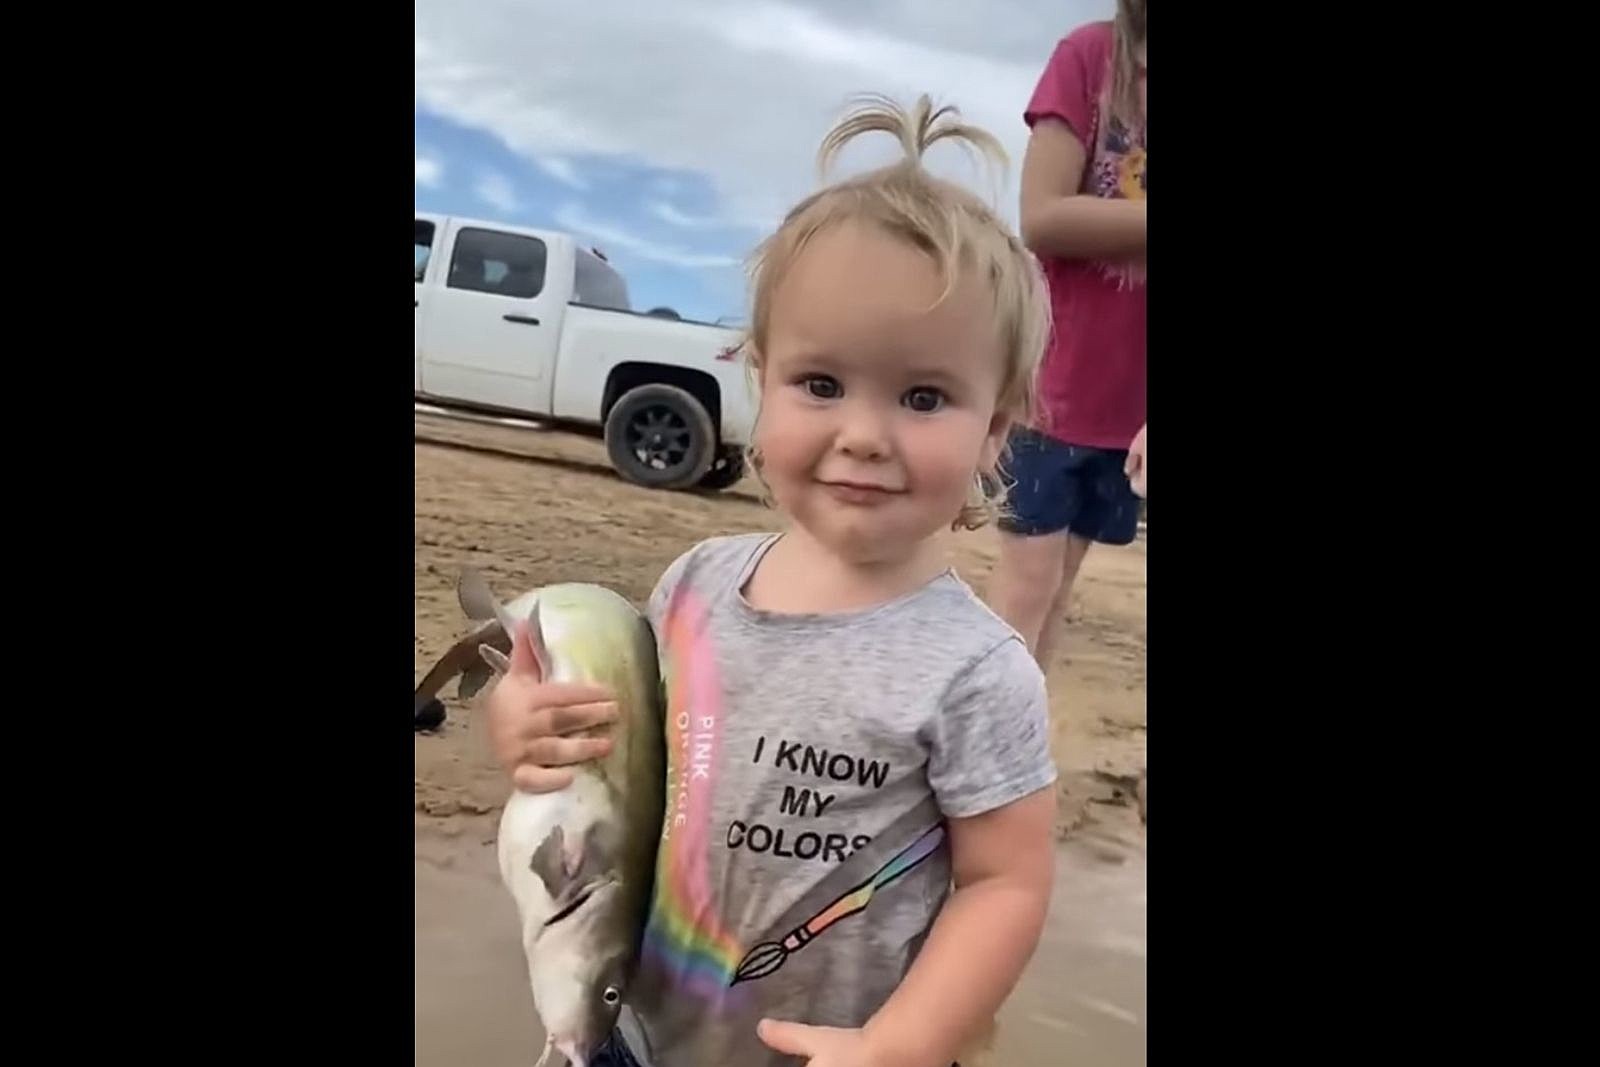 Got 'Em! The Internet's Wild For Crazy Baby Catfish Noodler